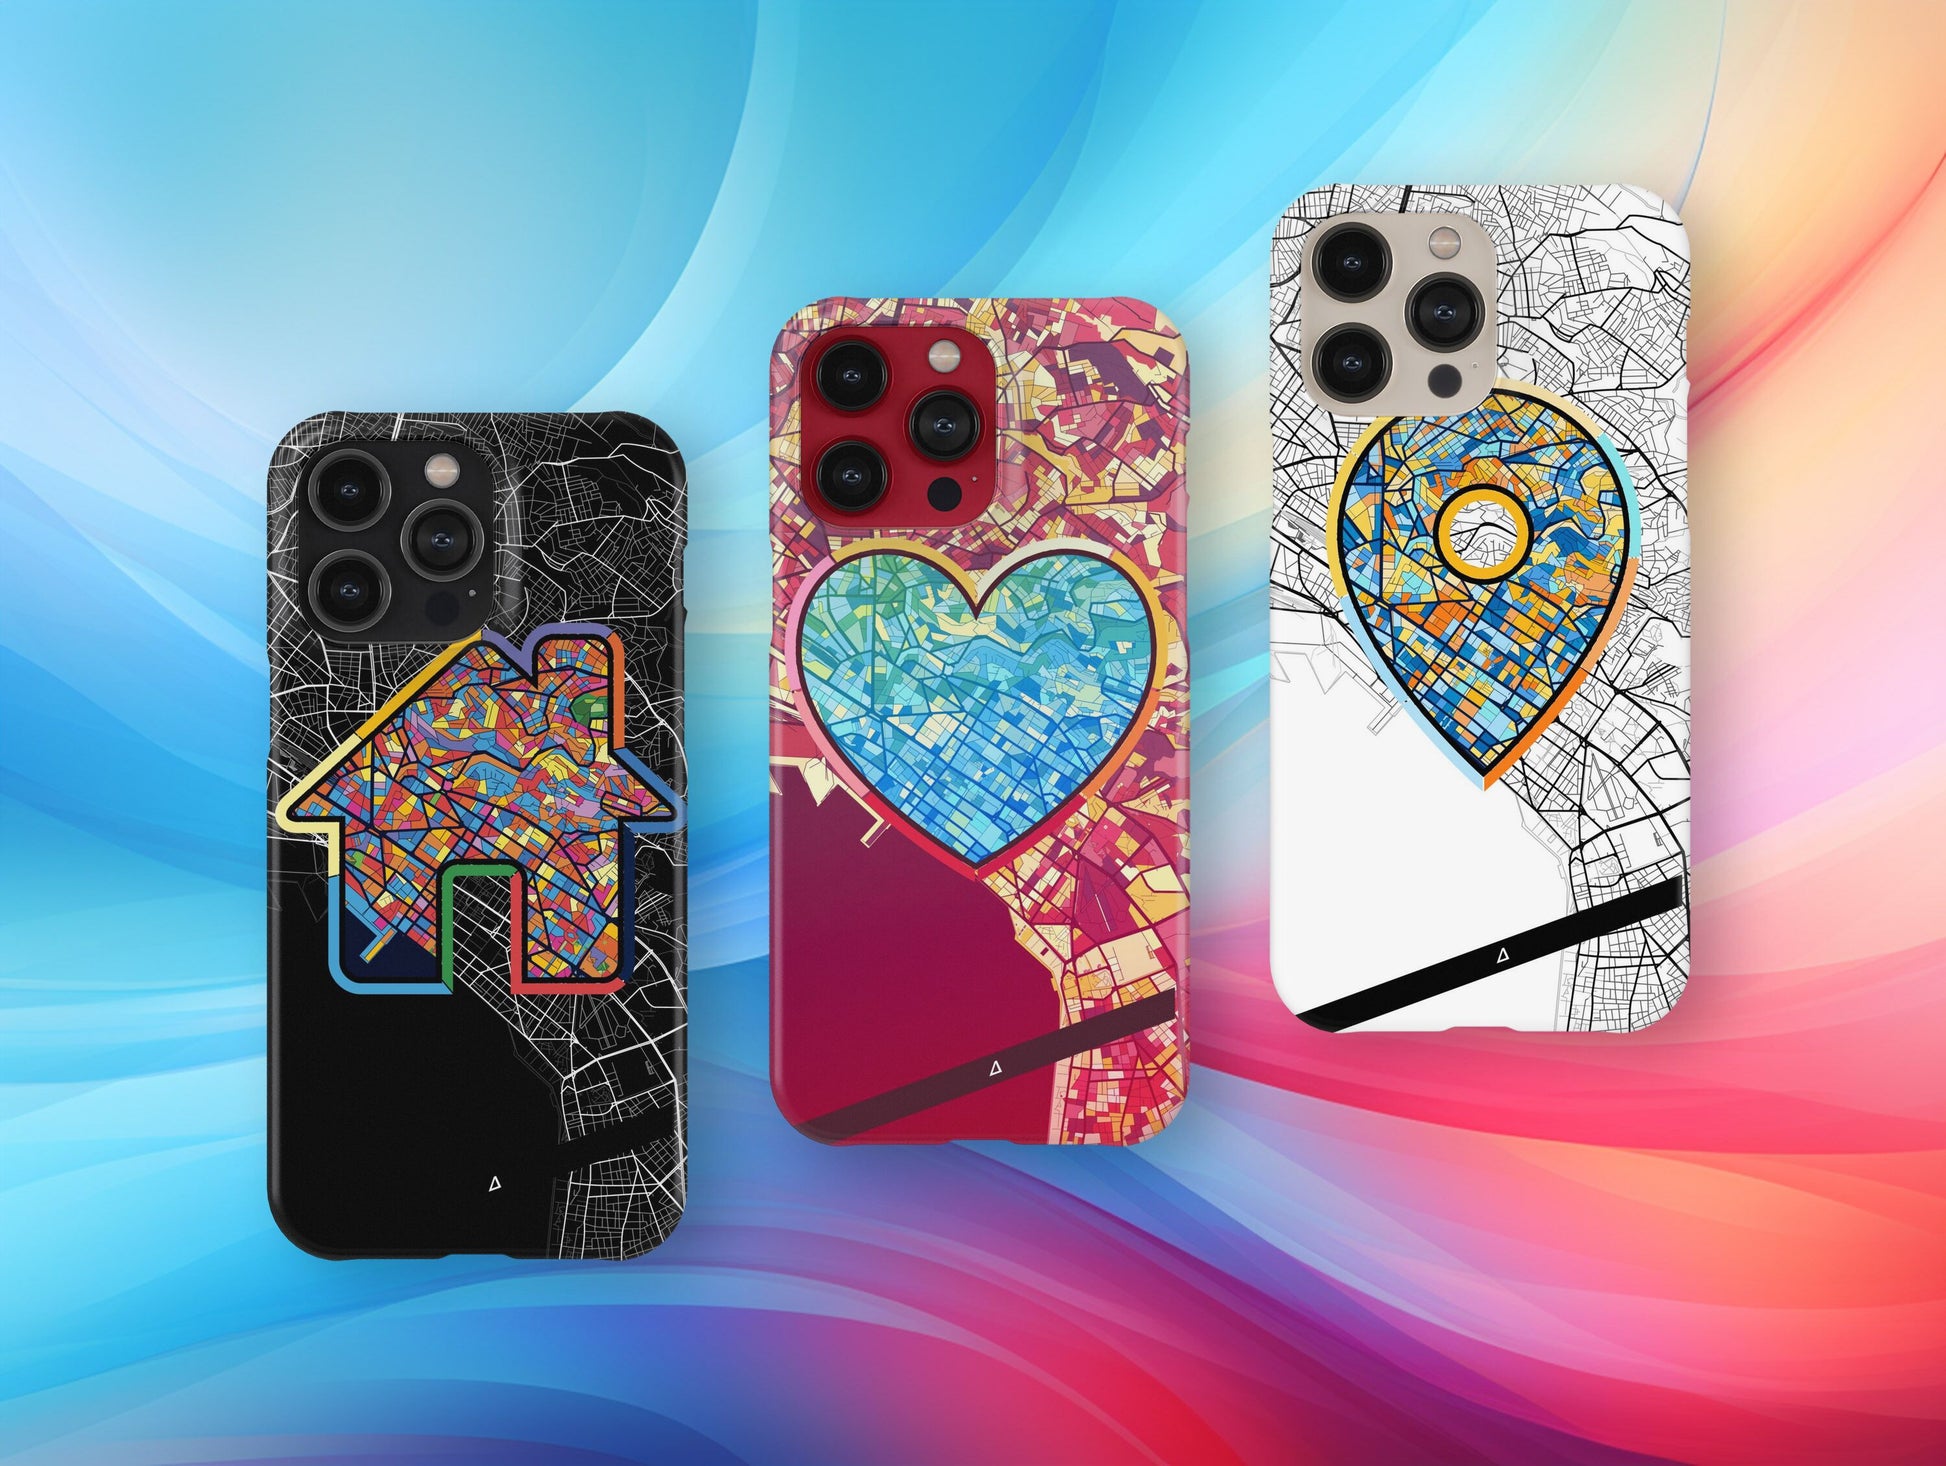 Θεσσαλονικη Ελλαδα slim phone case with colorful icon. Birthday, wedding or housewarming gift. Couple match cases.